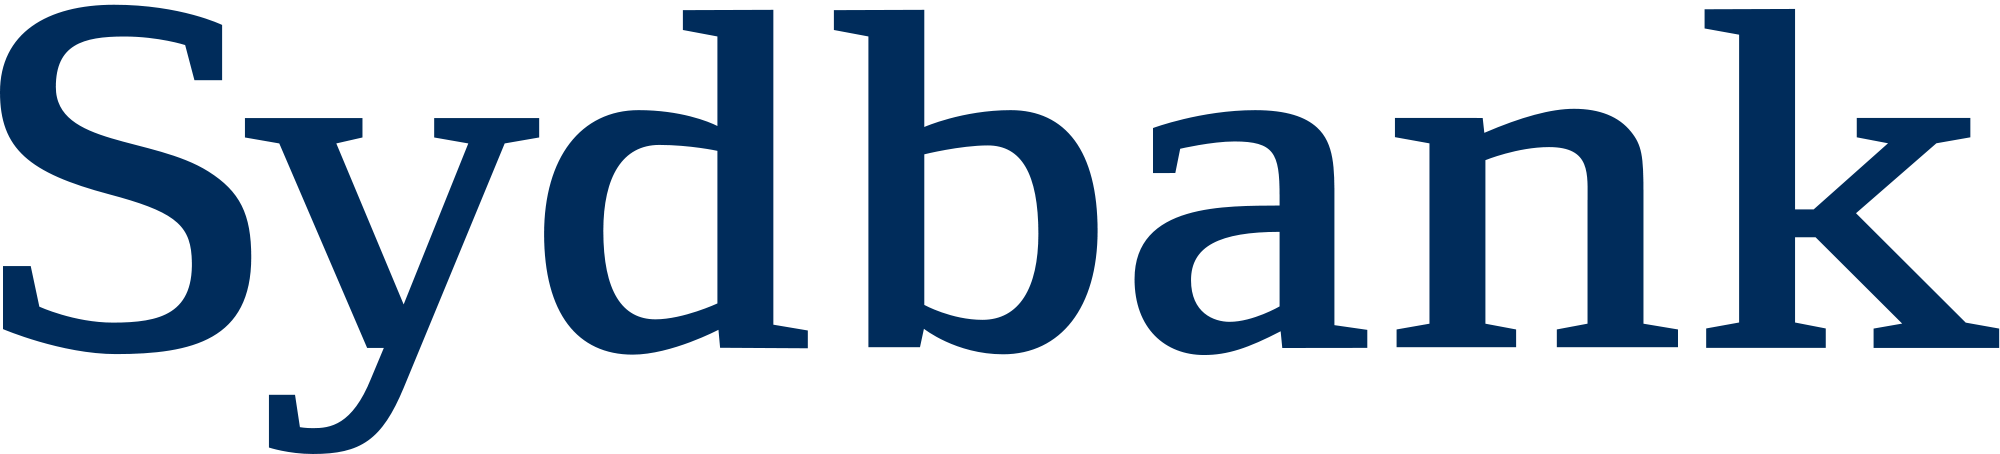 Sydbank logo